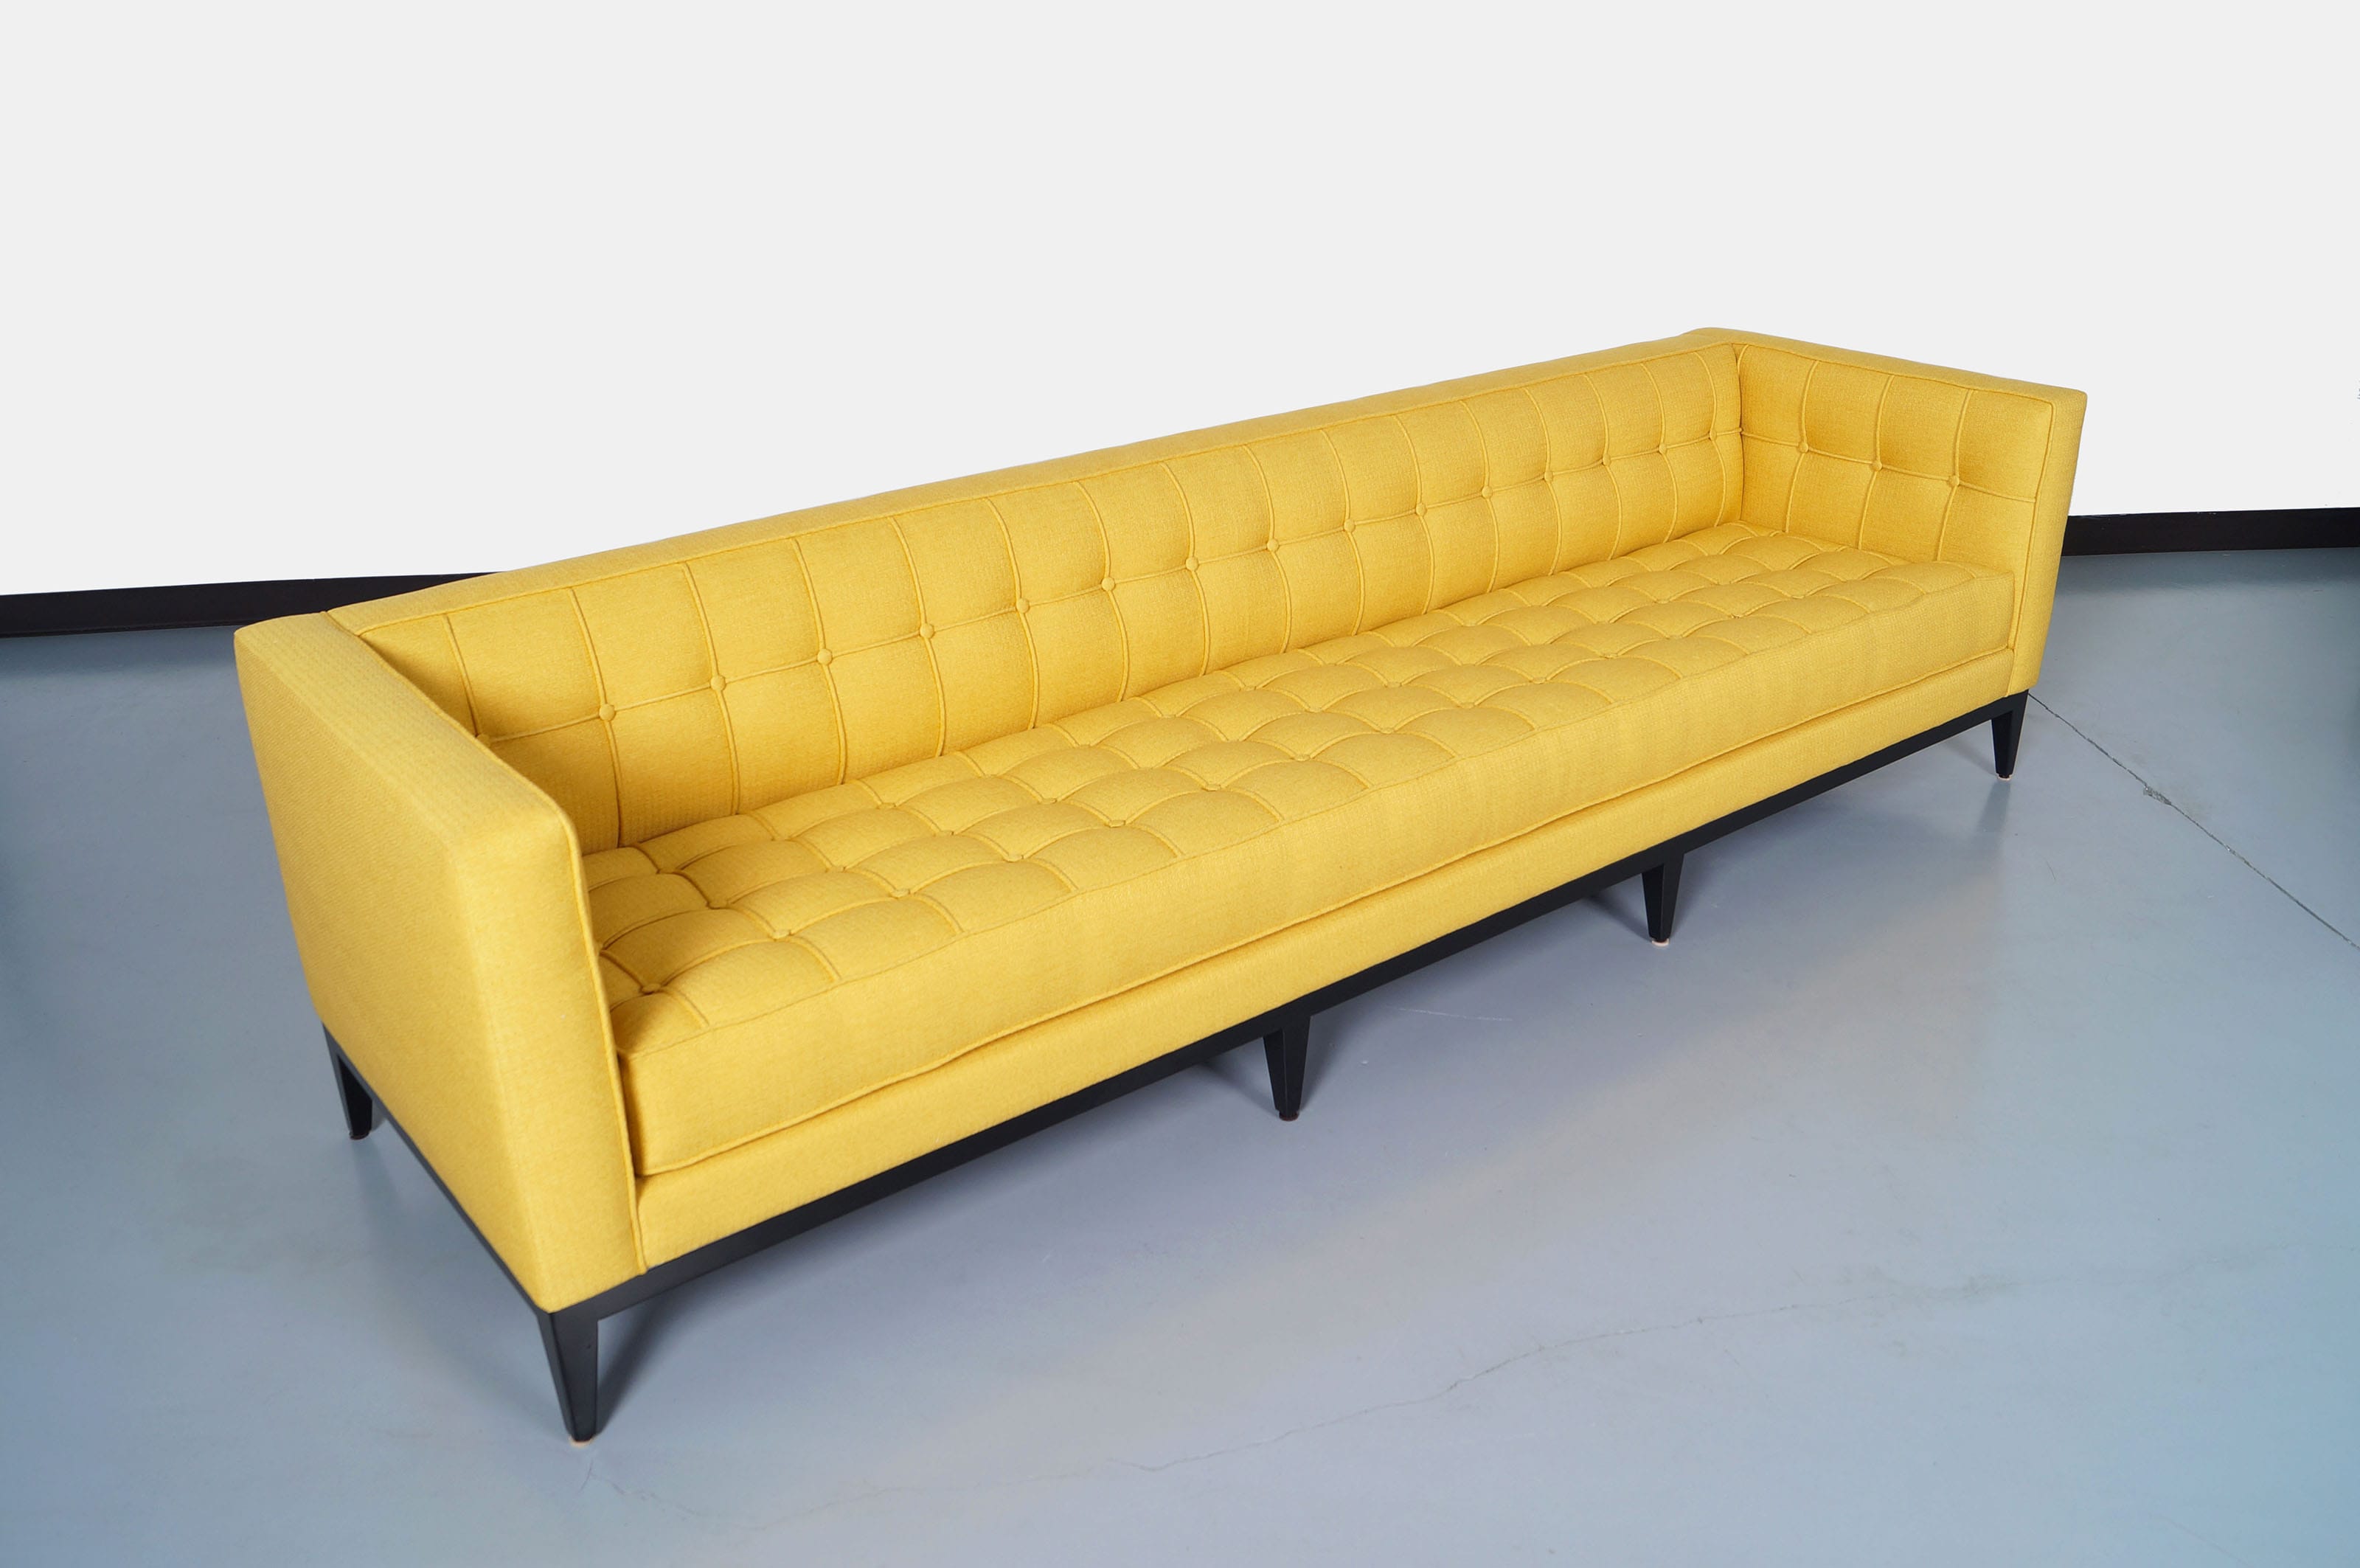 Elegant Tufted Vista Sofa by Cruz Design Studio 